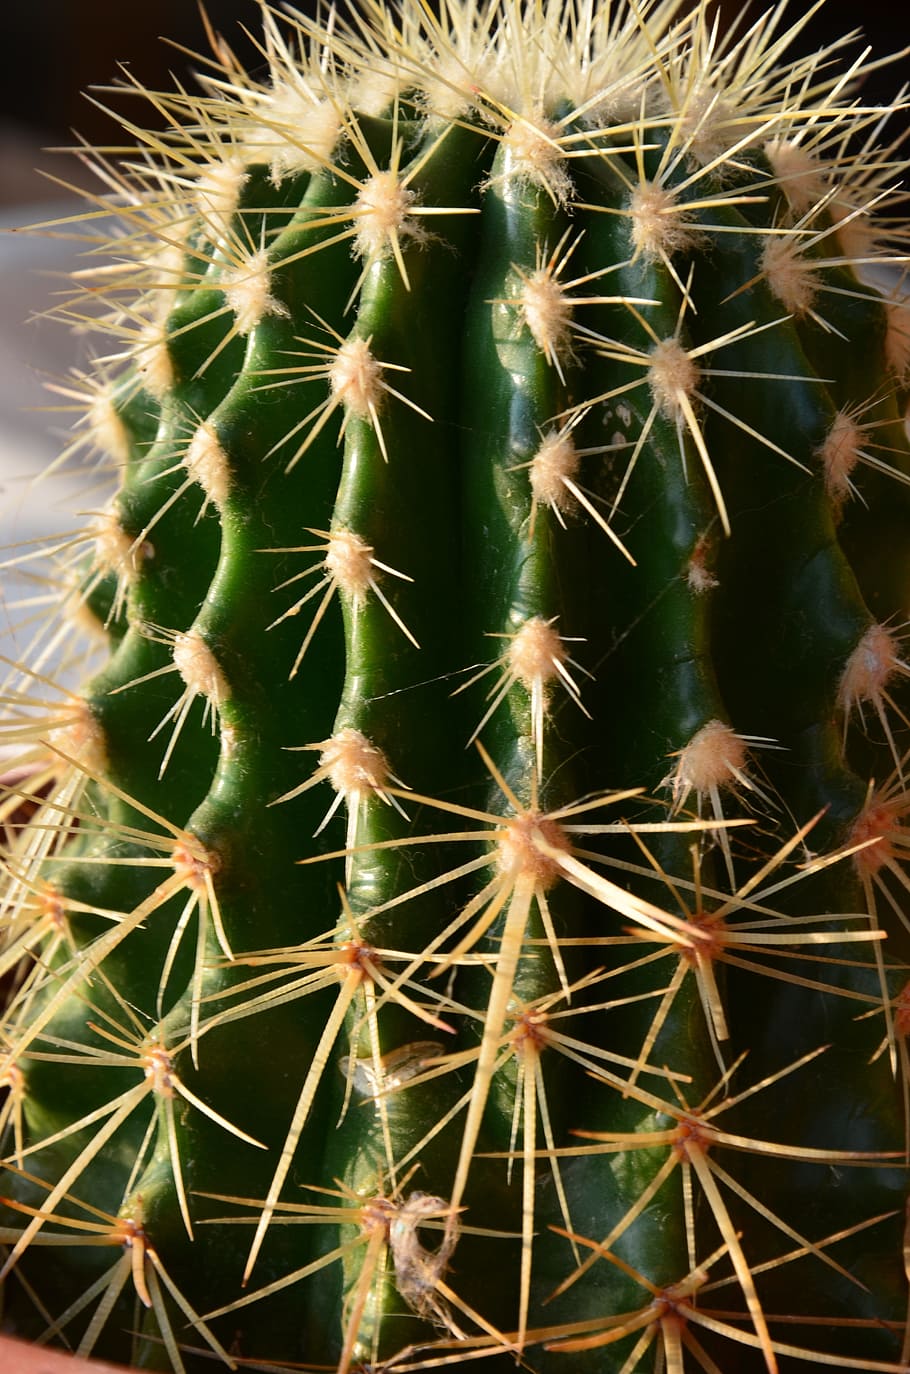 mini cactus, succulent plant, nature, cactus, thorn, spiked, sharp, close-up, barrel cactus, plant